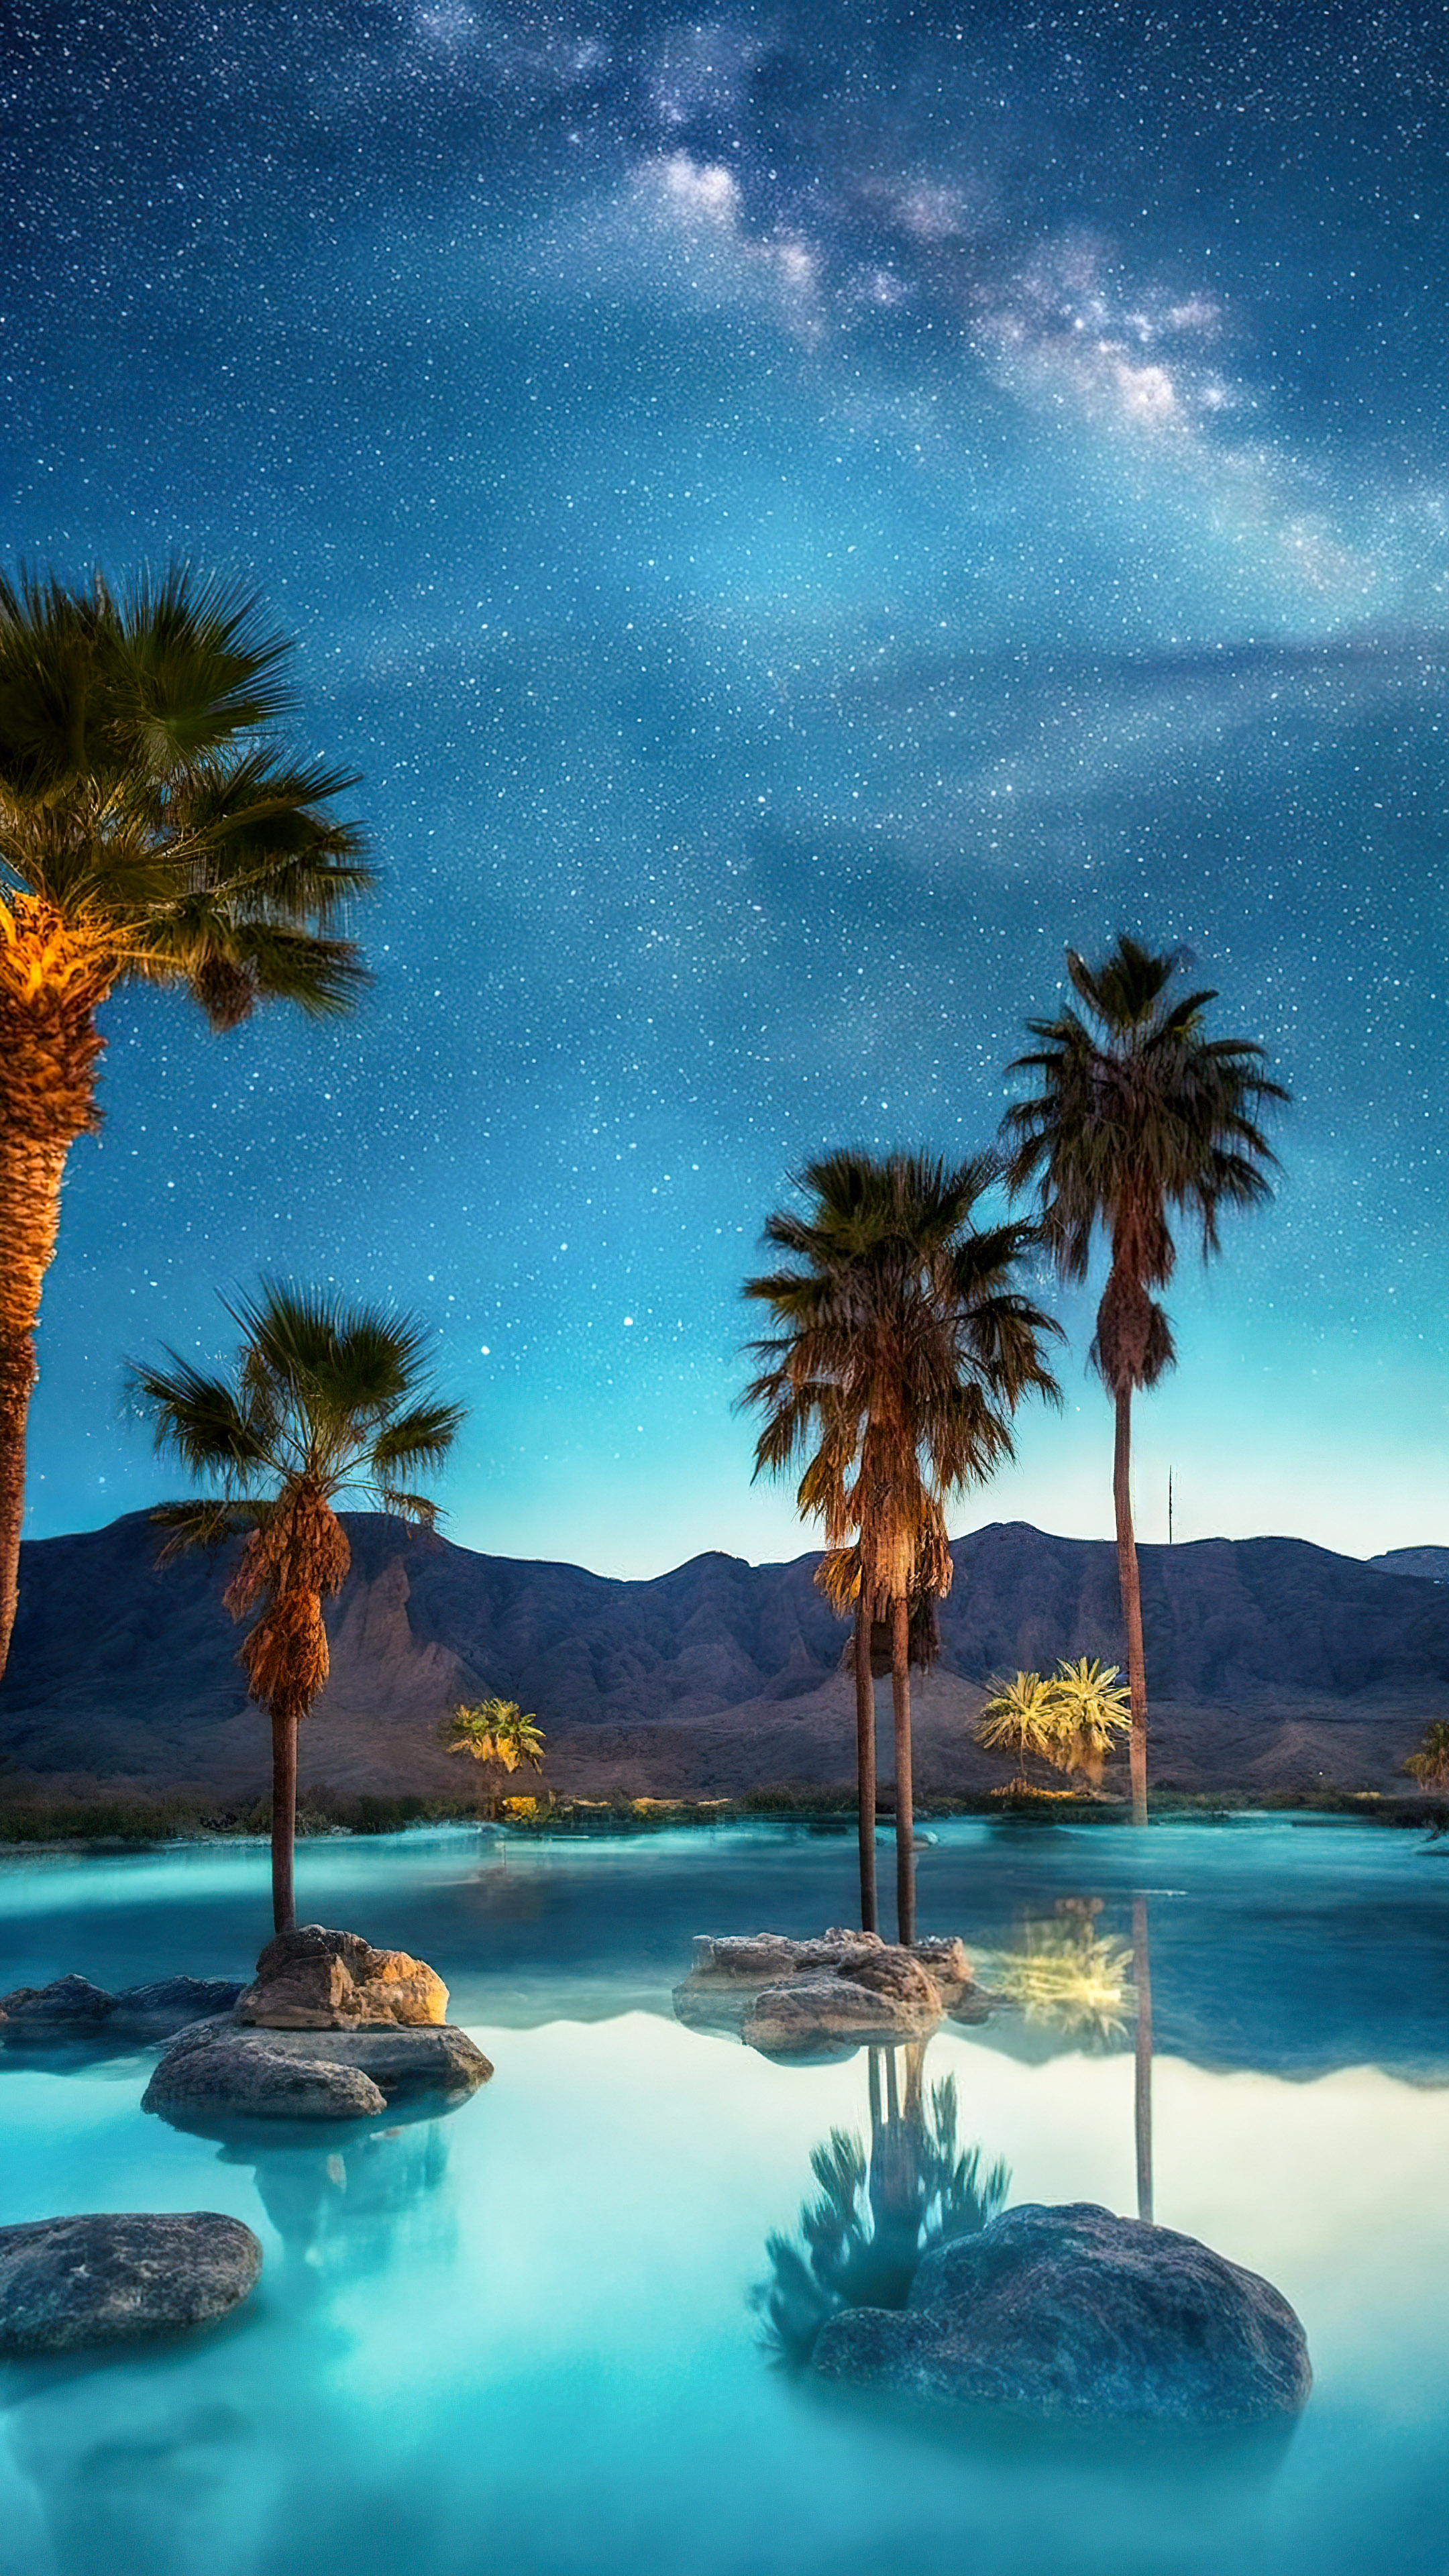 Transformez l'écran de votre appareil mobile avec notre arrière-plan de nuit de plage, où des palmiers entourent une piscine sereine et étoilée.